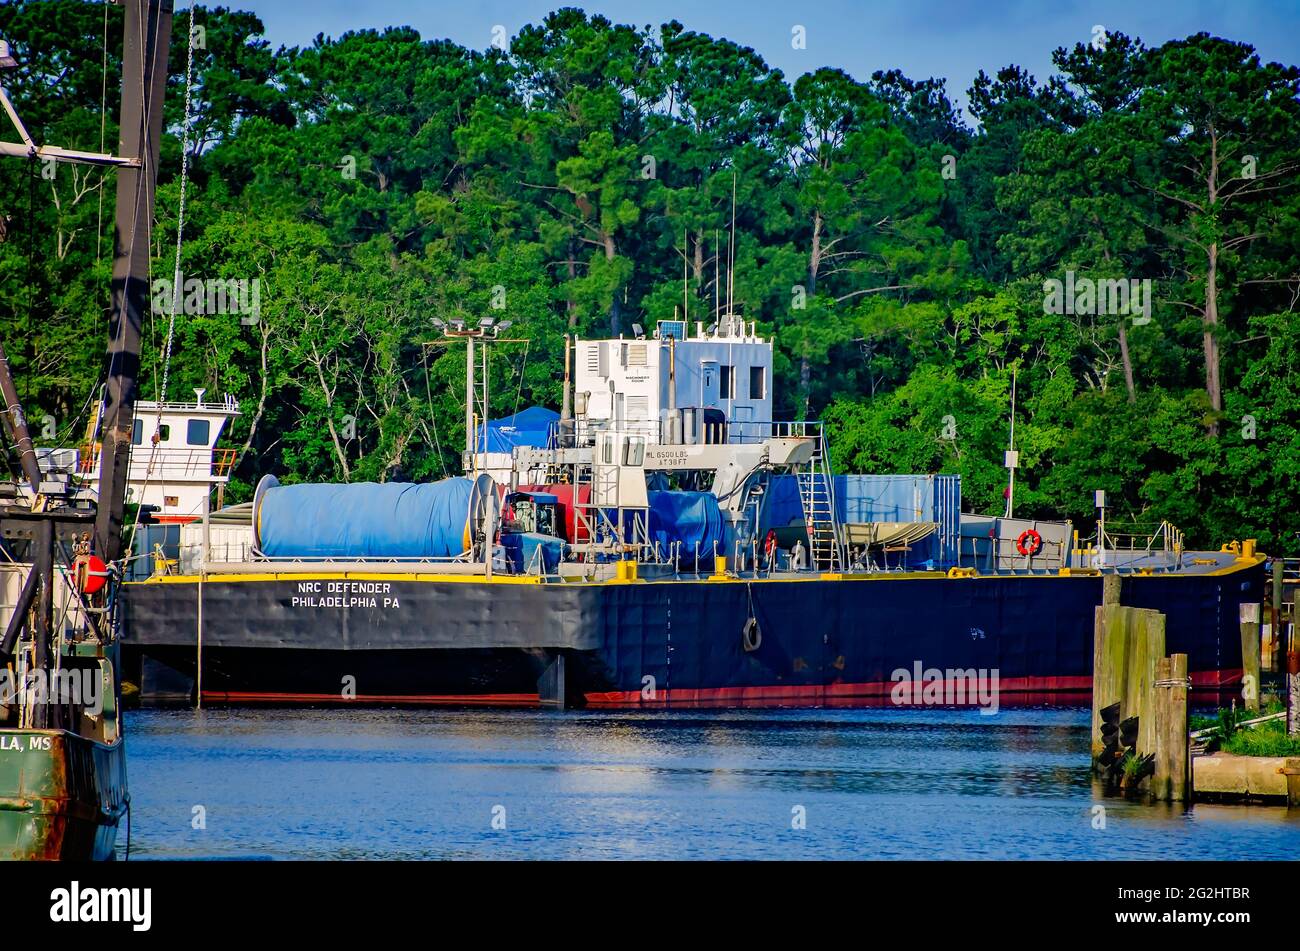 Il Defender NRC è ancorato a Bayou la Batre, Alabama. La chiatta cisterna, di proprietà della National Response Corporation, viene utilizzata per le fuoriuscite di olio marino. Foto Stock